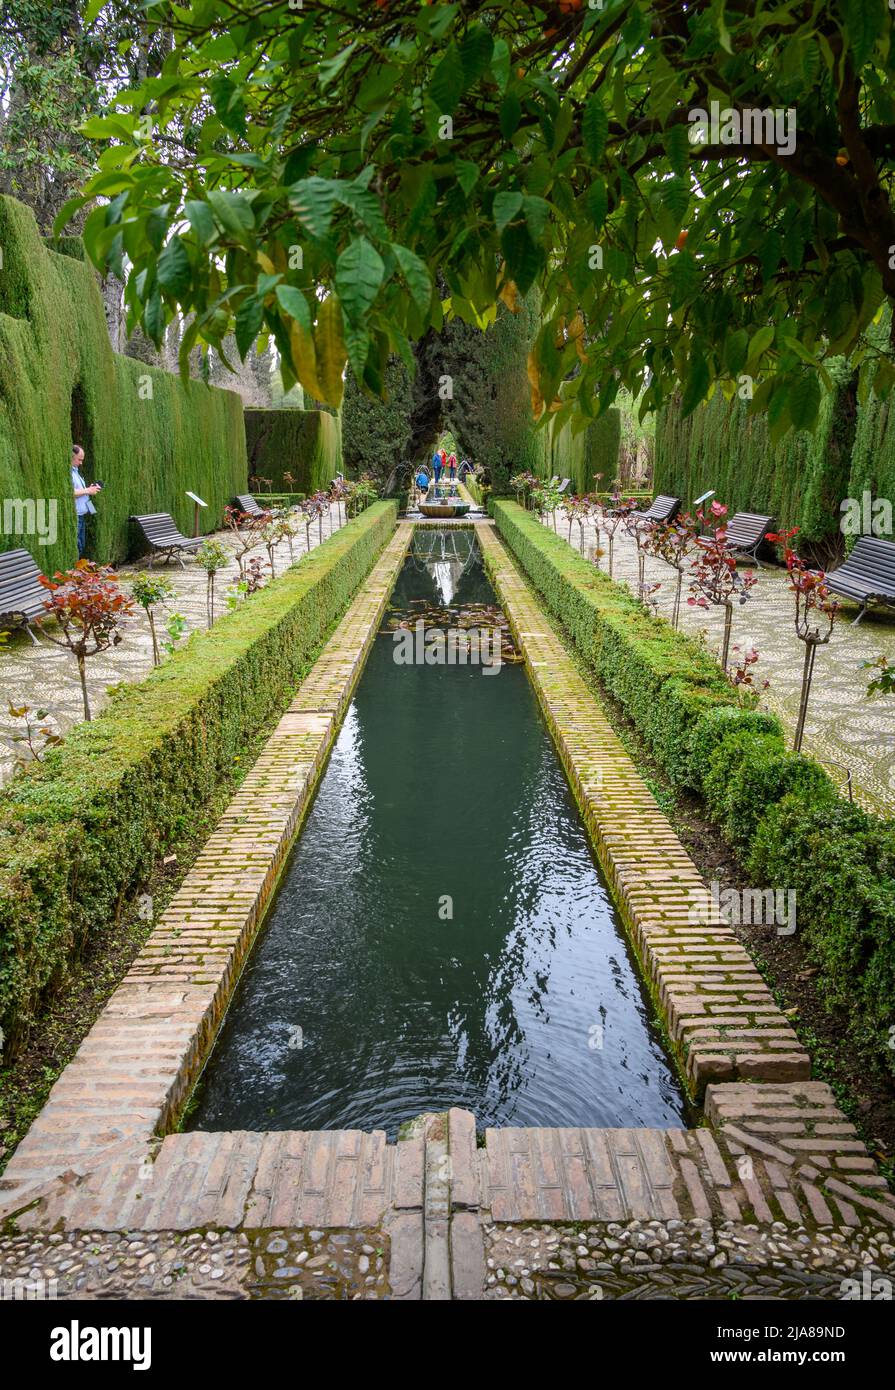 Jardines Bajo del Generalife, jardins et étang à l'Alhambra, Grenade, Espagne. Banque D'Images